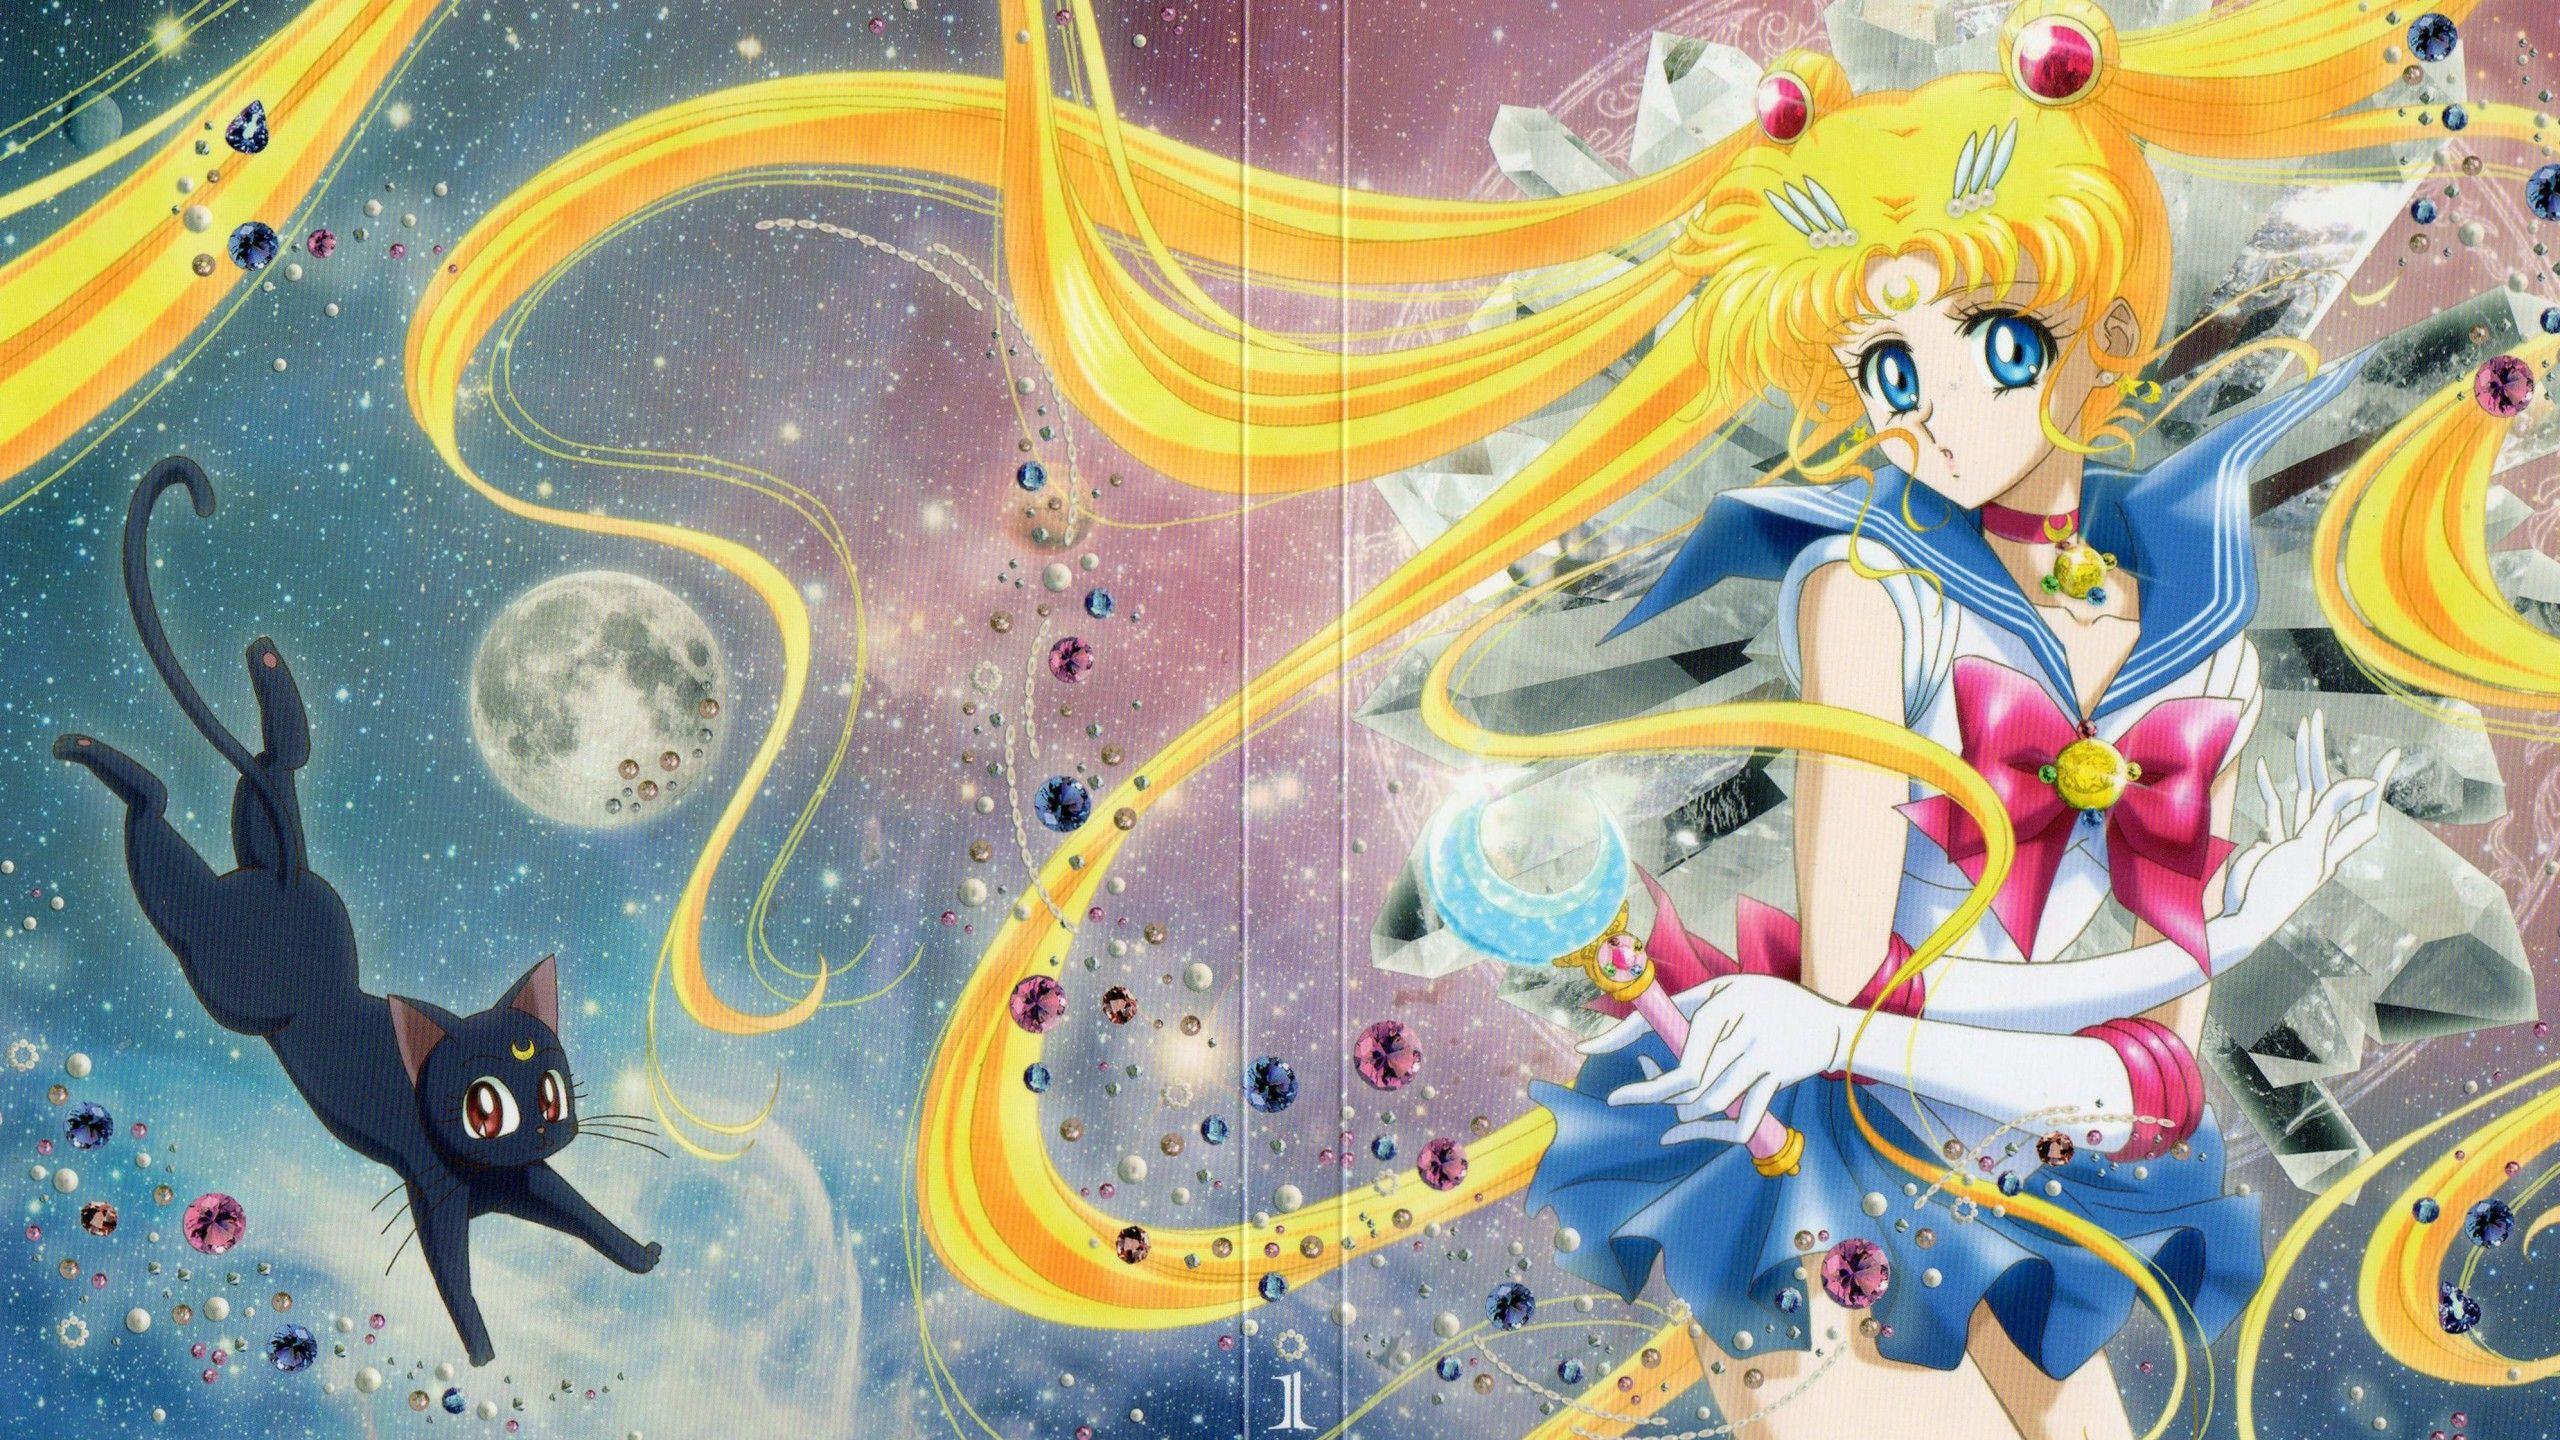 Sailor Moon Aesthetic Desktop Wallpapers Boots For Women